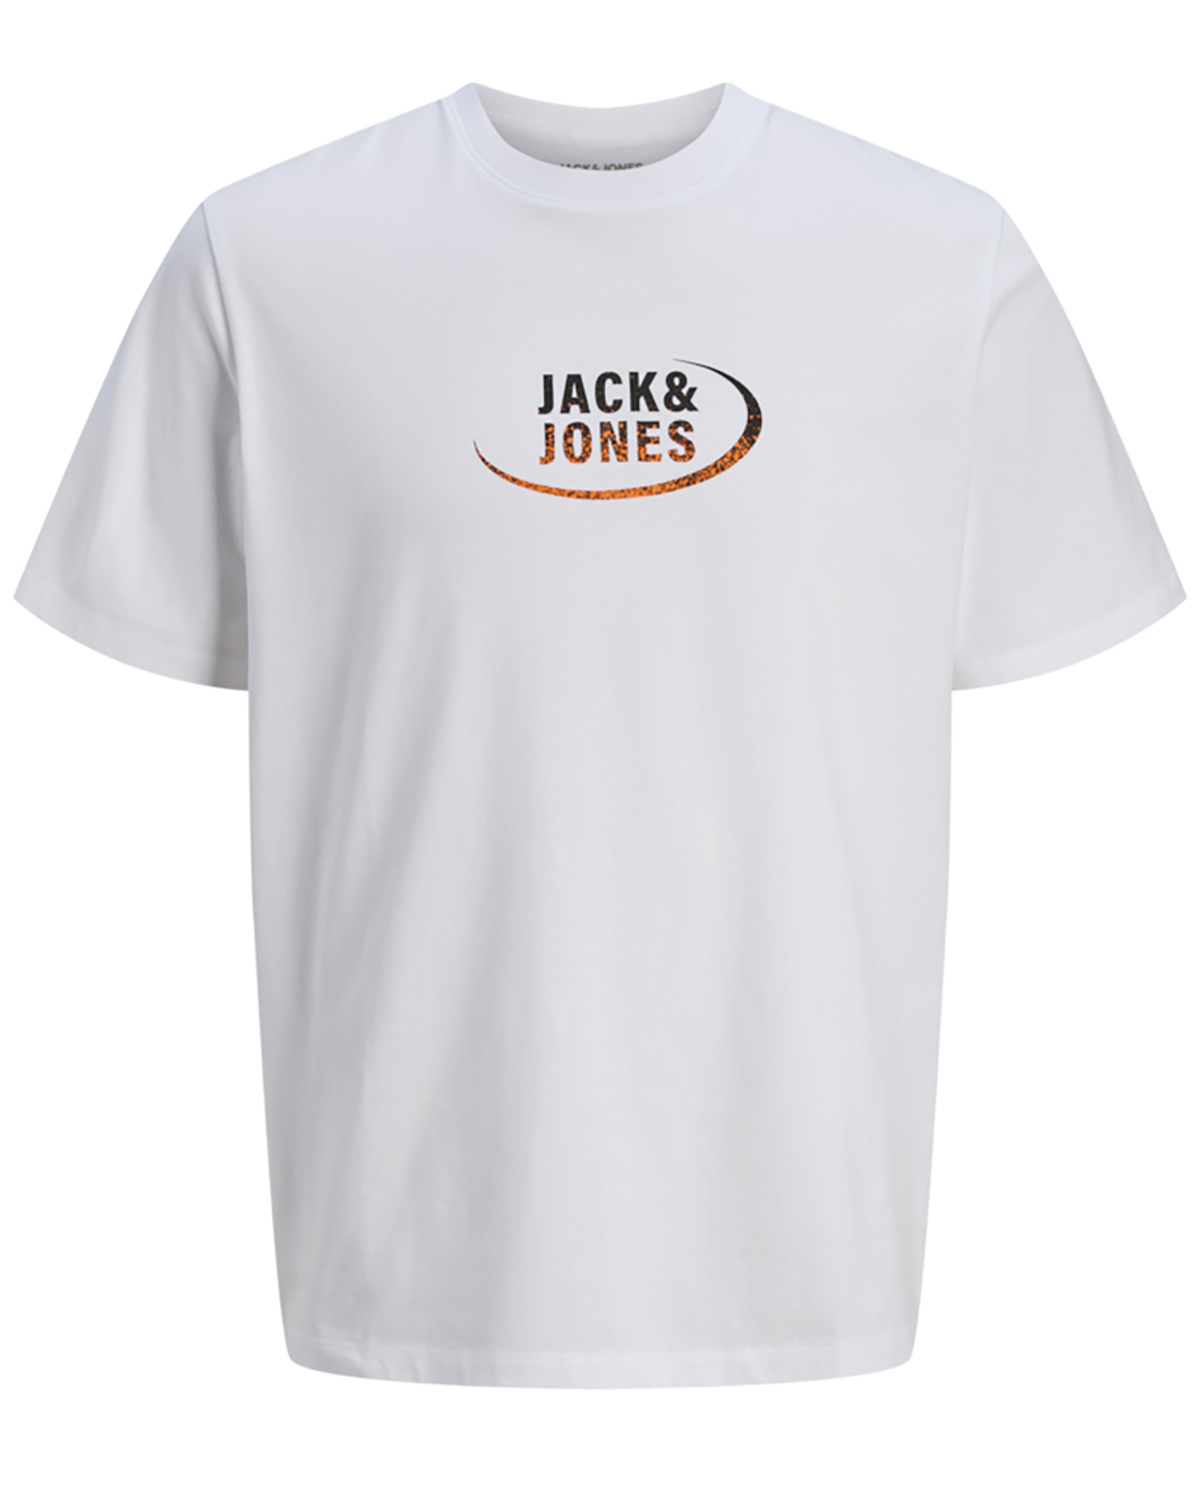 Se Jack & Jones t-shirt s/s, Gradient tee, hvid - 176 - S+ - S hos Umame.dk